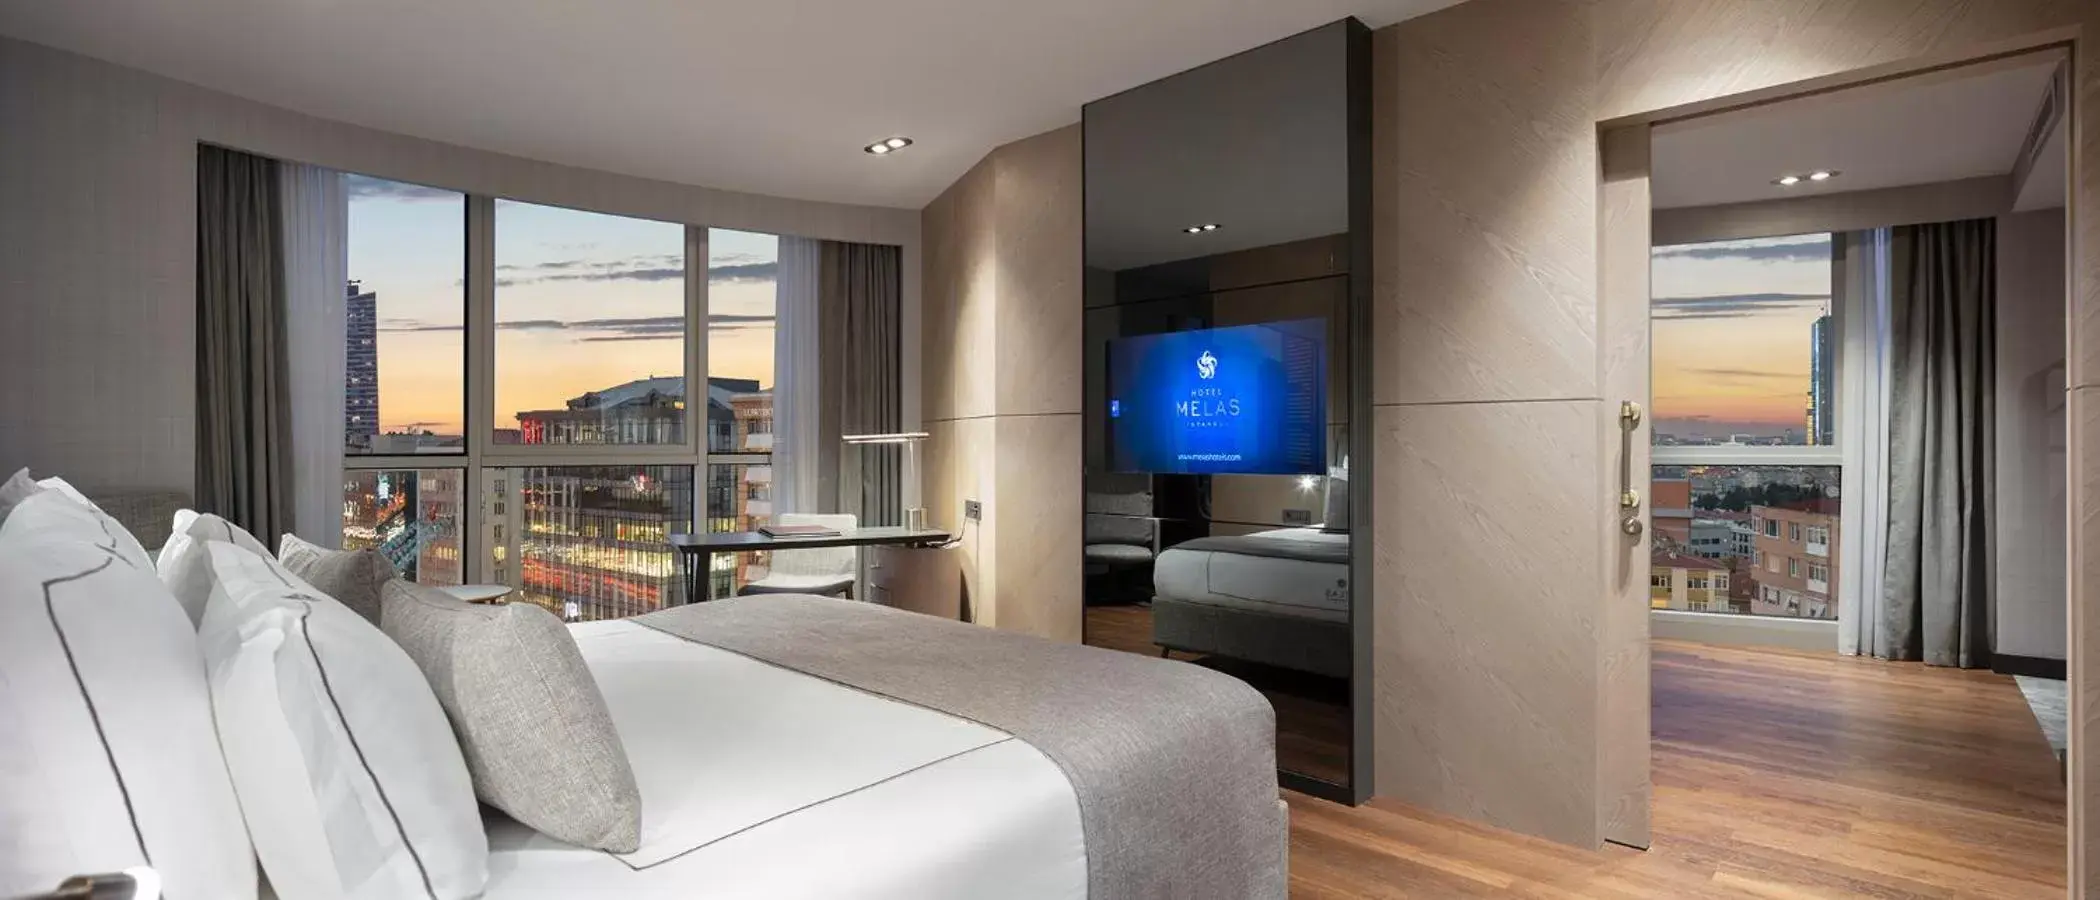 Bedroom in Melas Hotel Istanbul